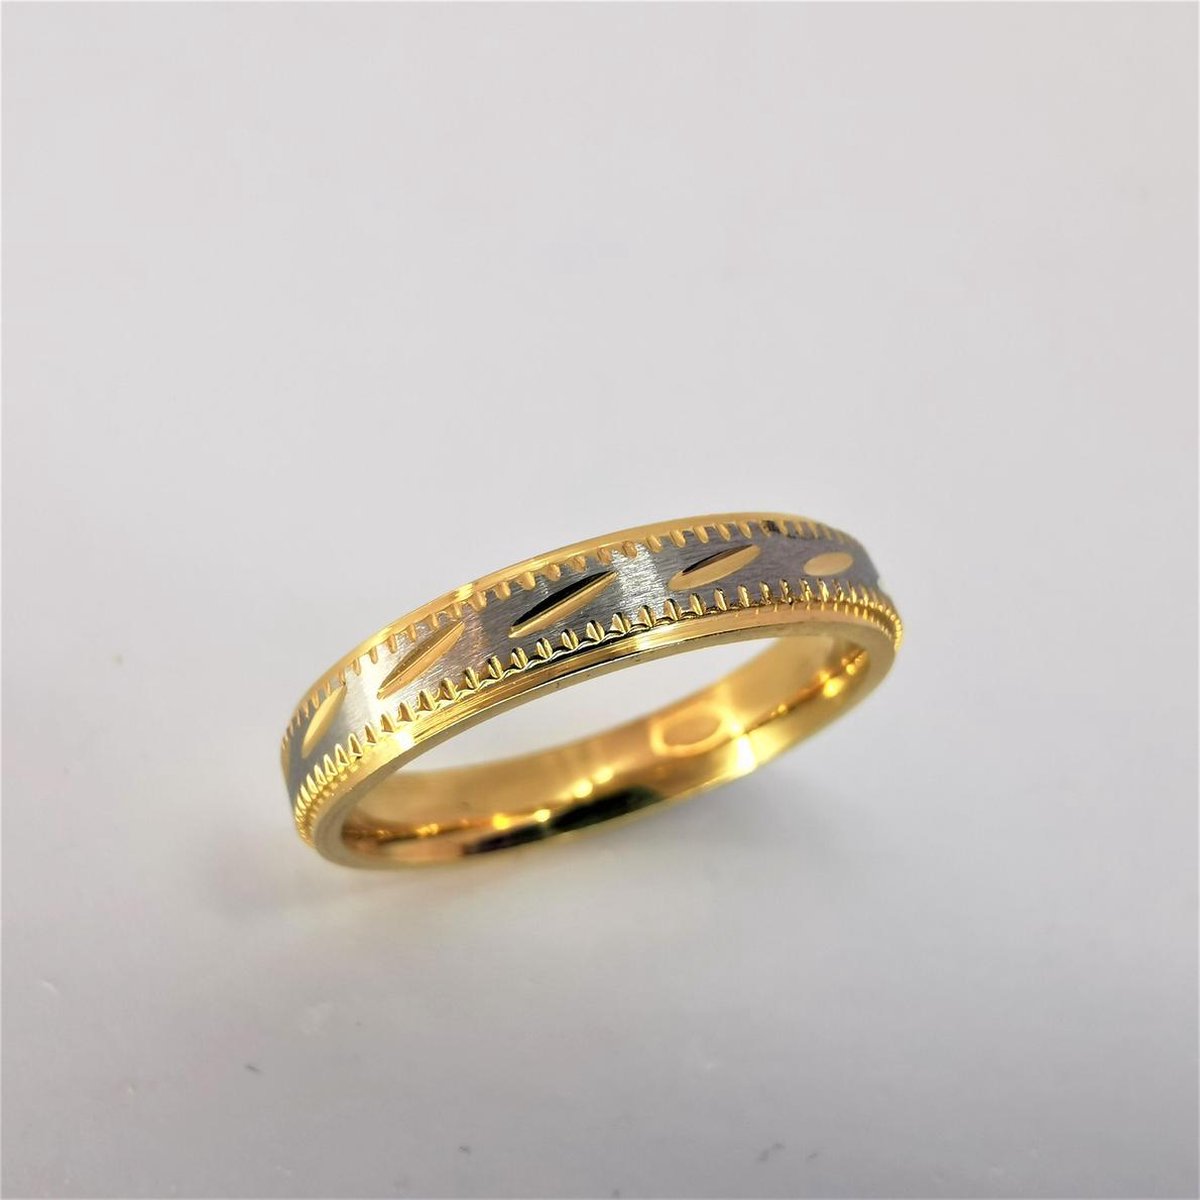 Edelstaal goudkleur ring met geborsteld zilver oppervlak en goudkleur schuin streep erin verwerkt. Deze ring is zowel geschikt voor dames en heren. maat 22 - Lili 41